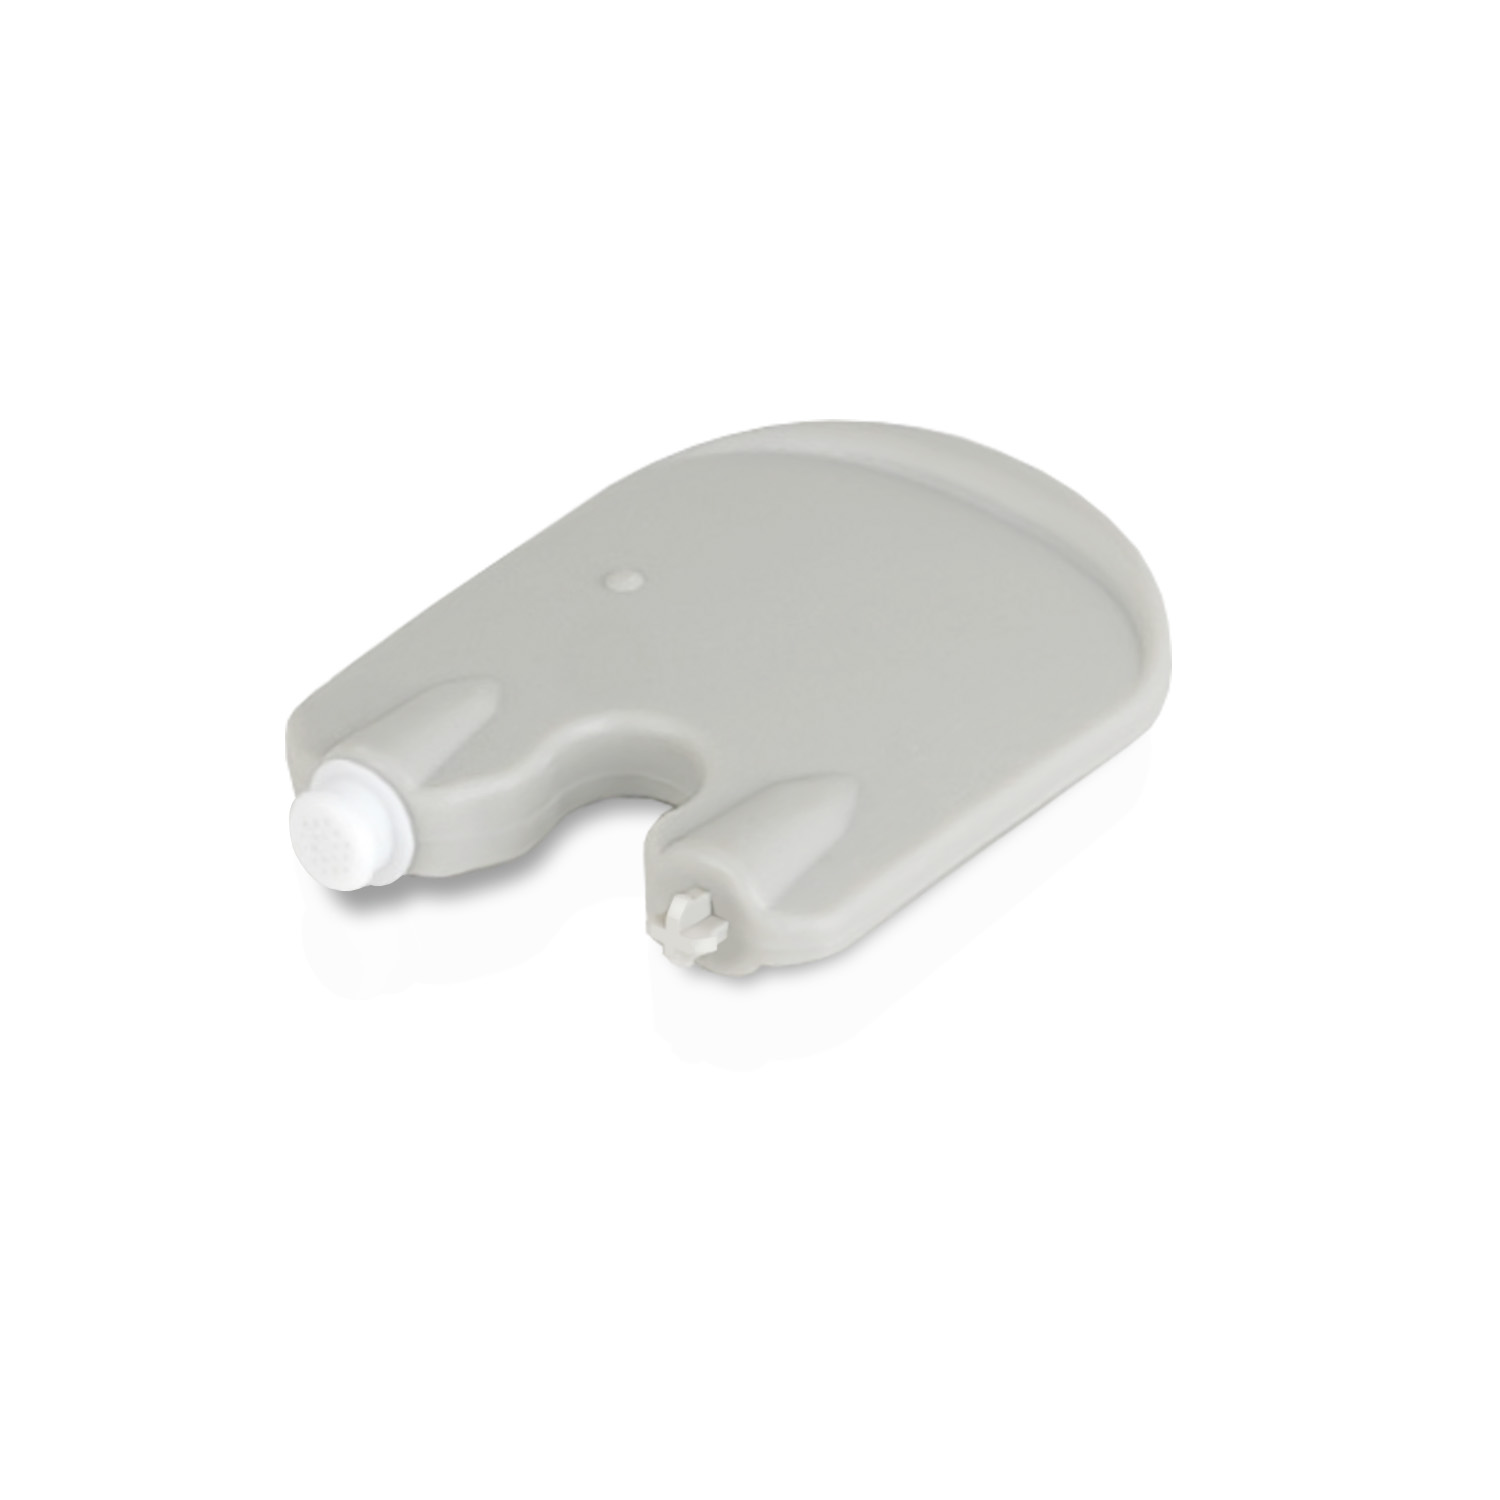 Hörgeräte Oticon 30x mit Cerumenfilter kompatibel für Hörgeräte für WHITE JB Hörgeräte-Zubehör ProWax Cerumenfilter Bernafon, und